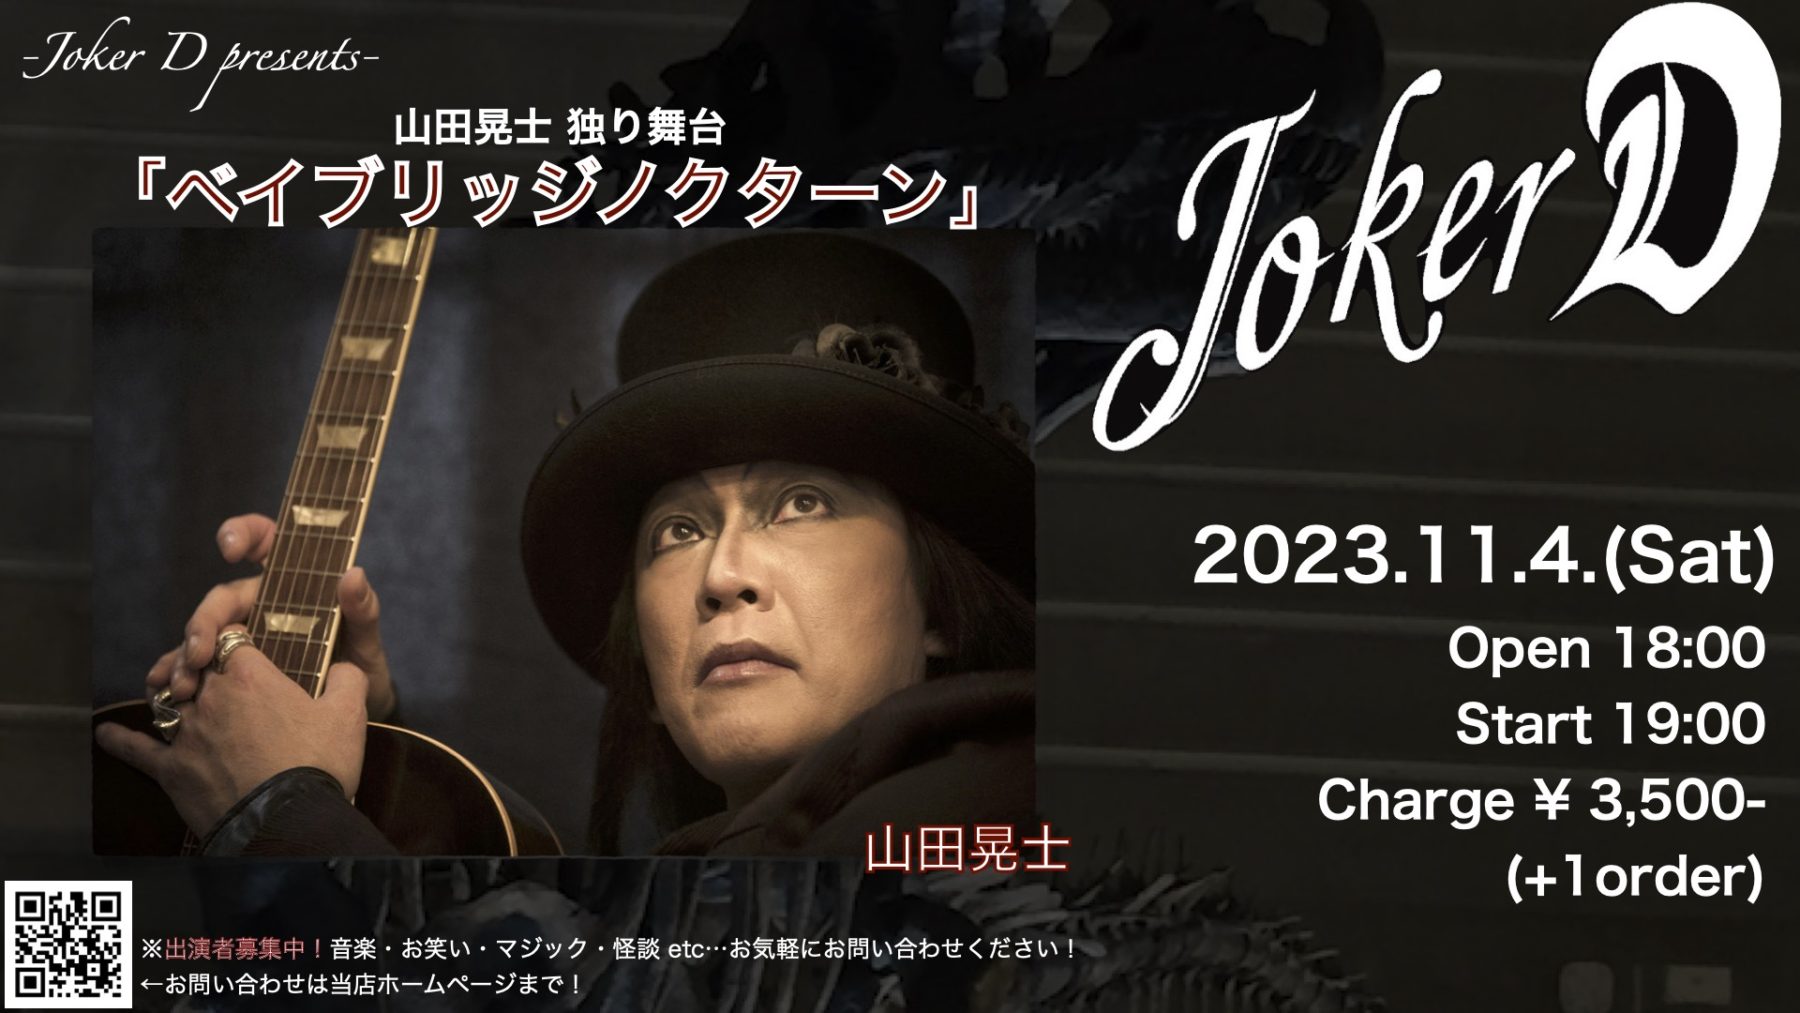 2023.11.04 Joker D presents『ベイブリッジノクターン』